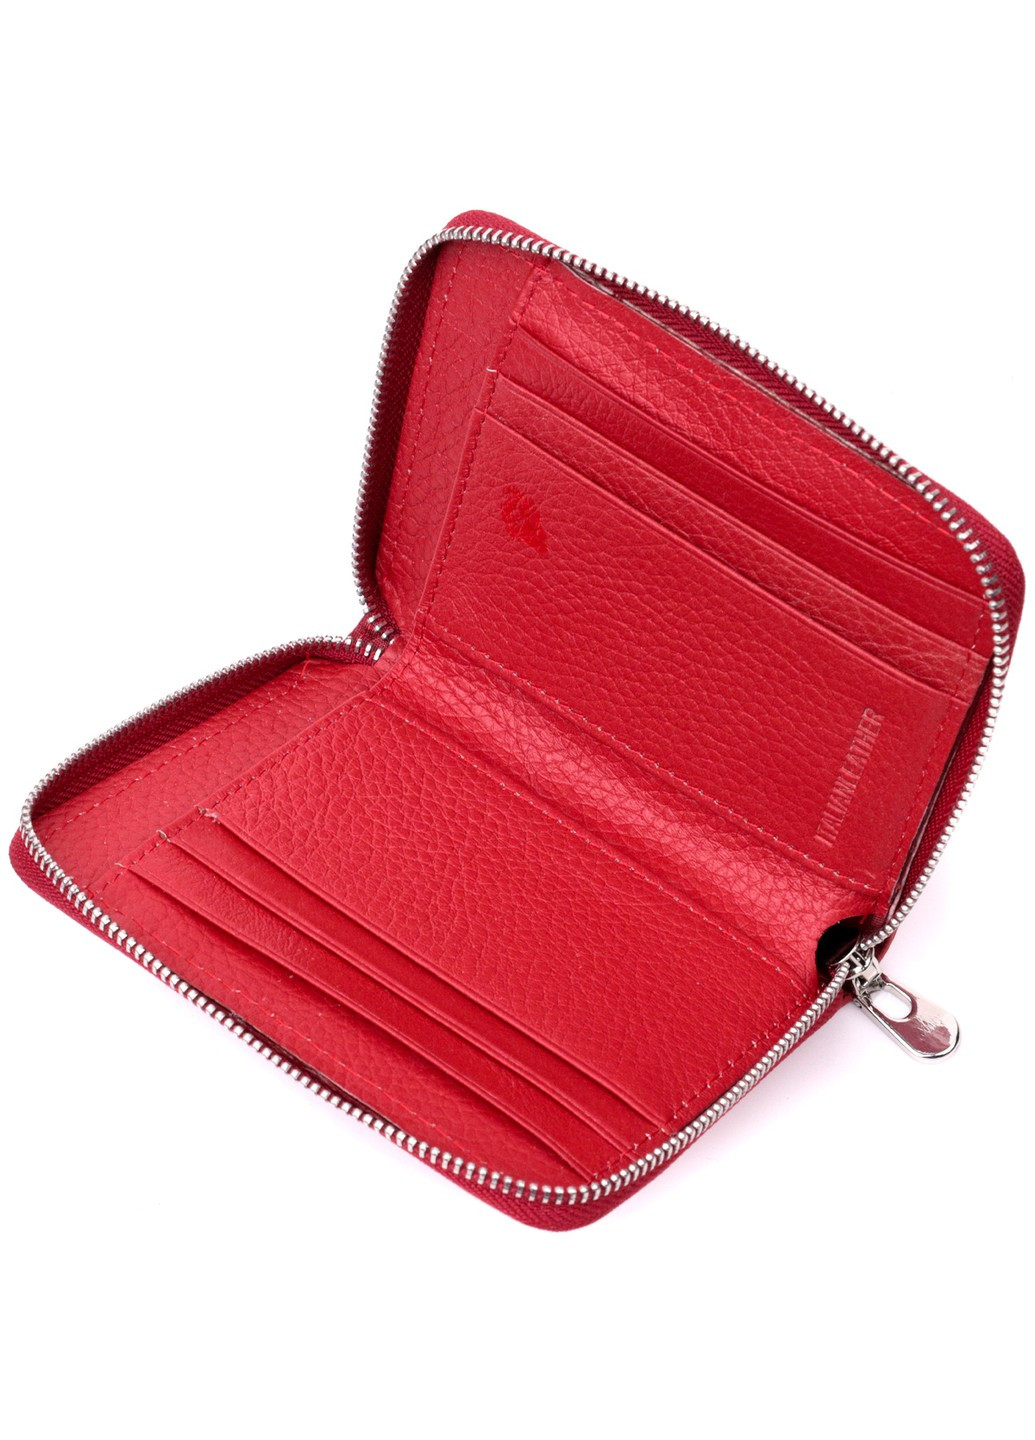 Кожаный женский кошелек на молнии с металлическим логотипом производителя 19484 Красный st leather (277980494)